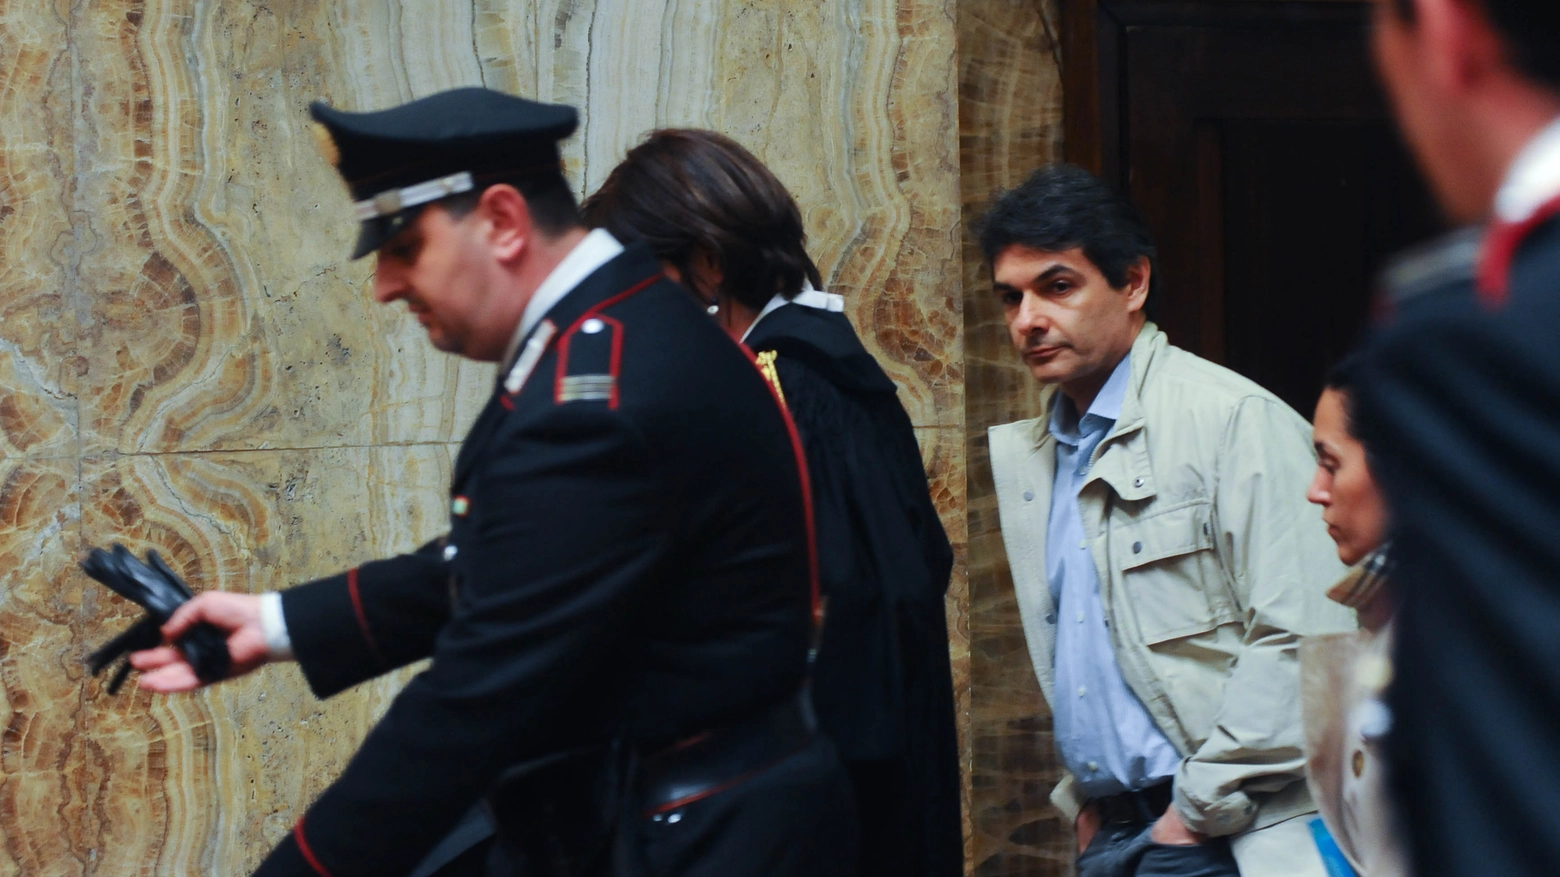 Pierpaolo Brega Massone in tribunale per il caso della clinica Santa Rita (Newpress)